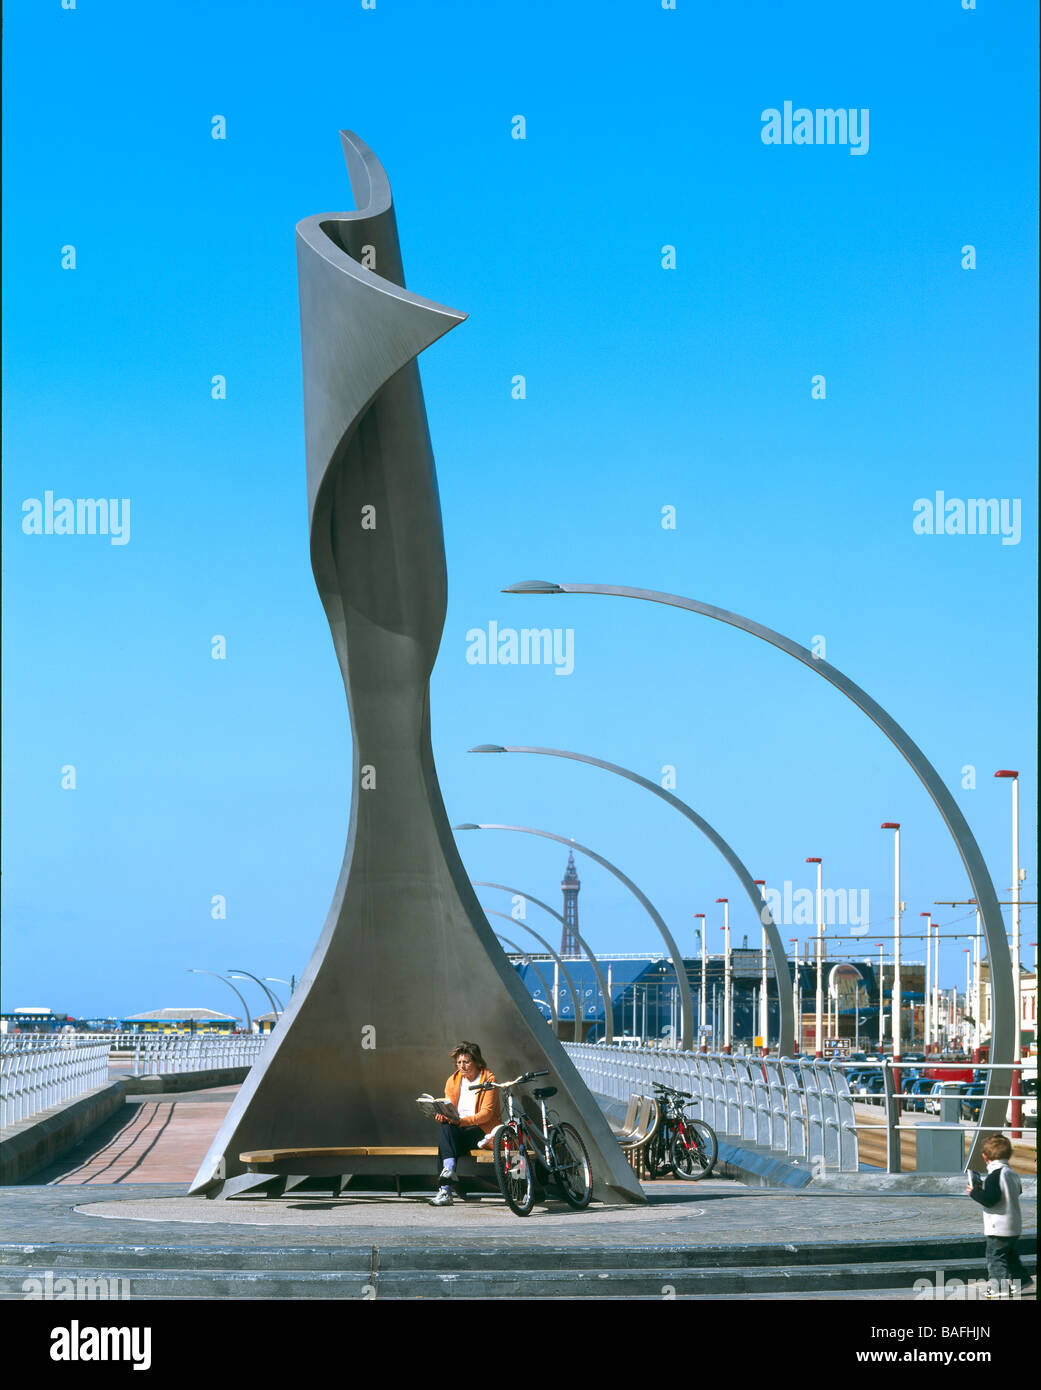 Drehen, Windschutz, Blackpool, Vereinigtes Königreich, McChesney Architekten, Rotating wind Schutz Fernblick mit Turm. Stockfoto